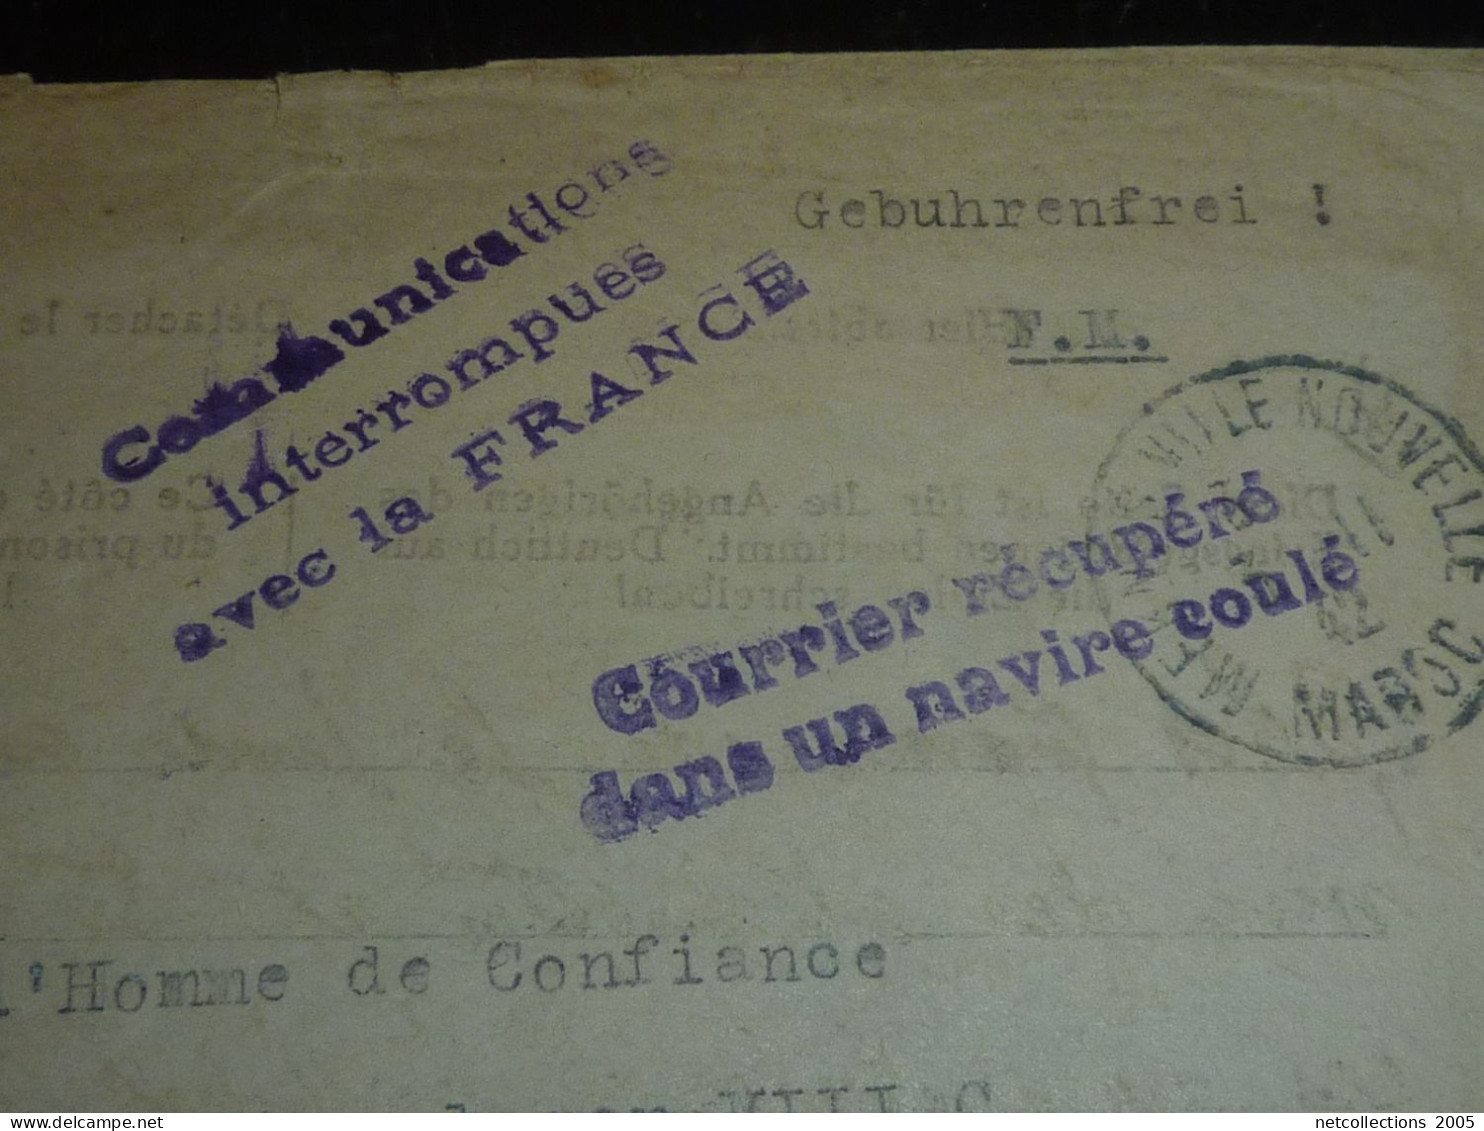 ENVELOPPE AU DEPART DE MEKNES 2-11-1942 - CACHET COURRIER RECUPERE DANS UN NAVIRE COULE -COURRIER EN FRANCHISE...(20/09) - Lettere Accidentate